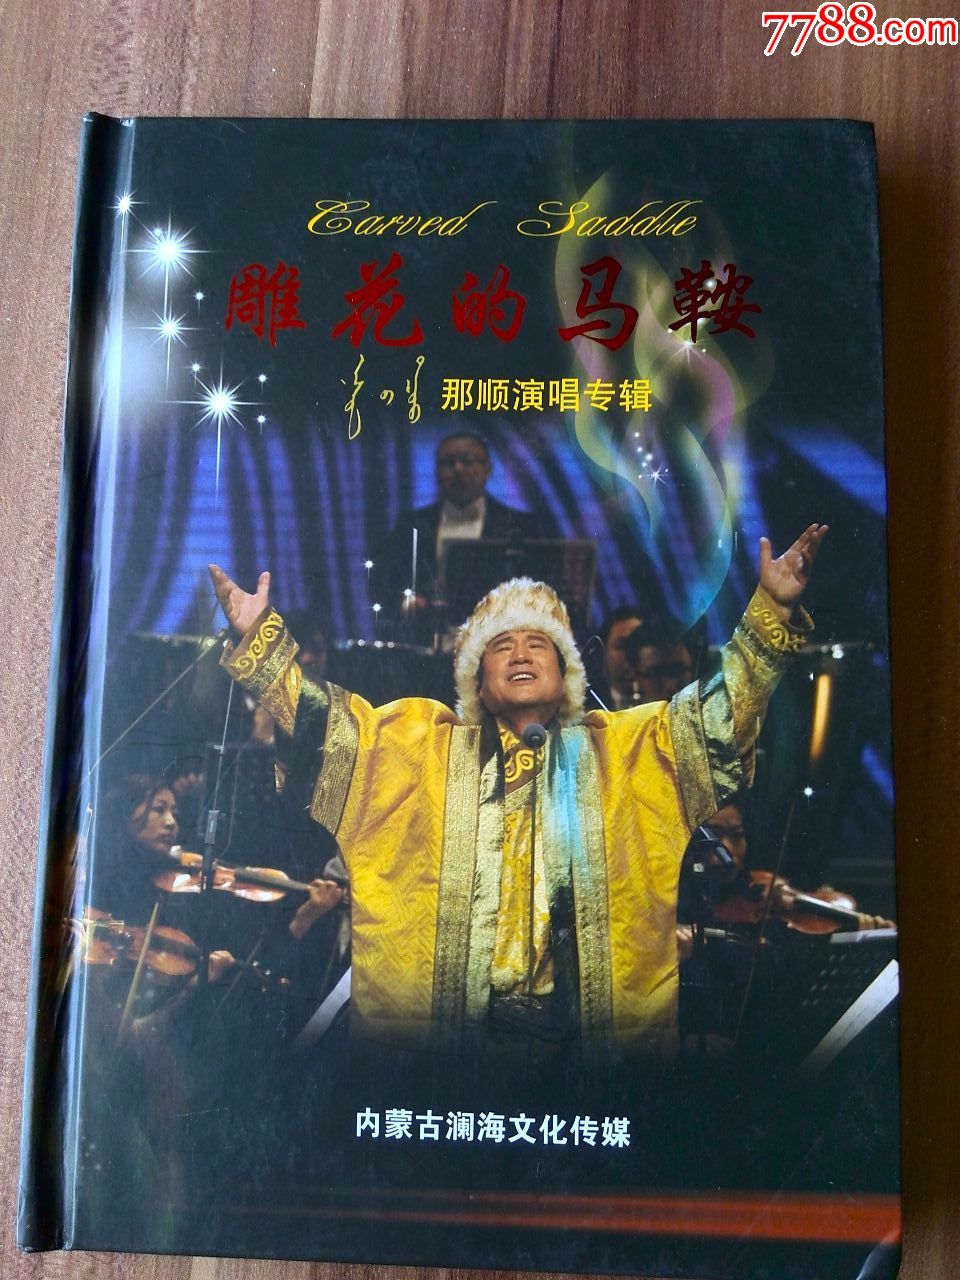 蒙古族男中音歌唱家那顺演唱专辑雕花的马鞍cddvd